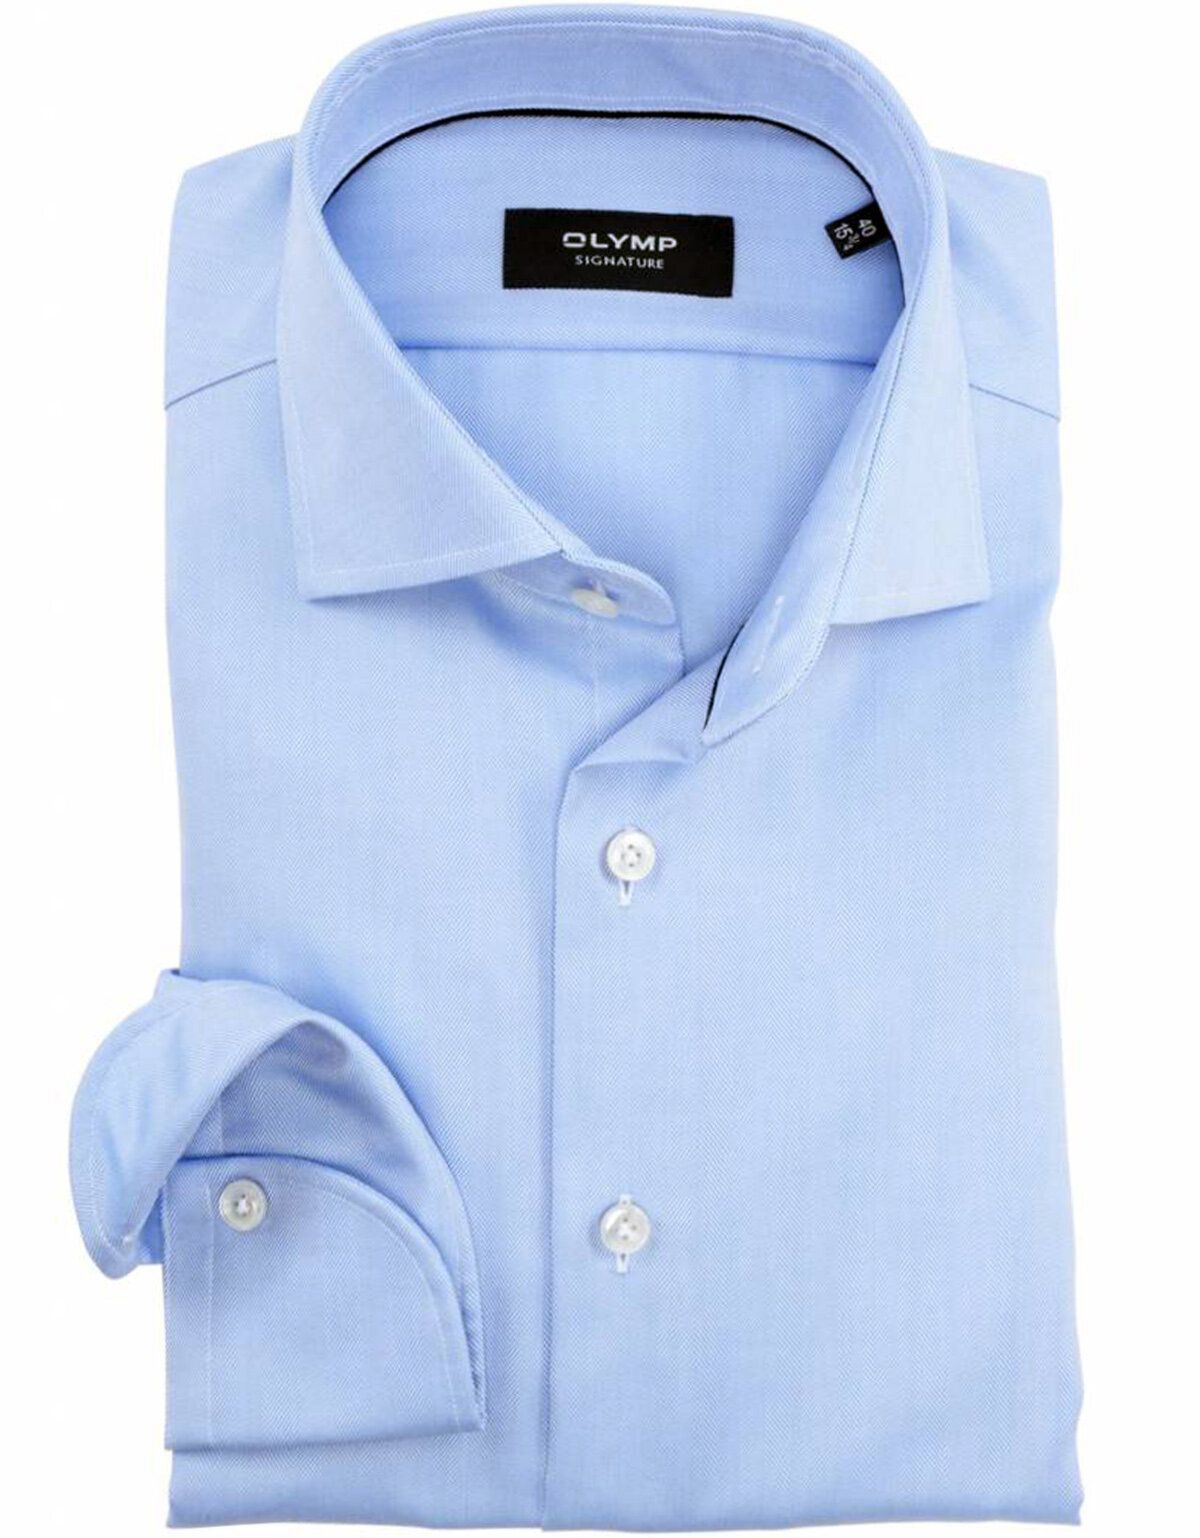 Голубая деловая мужская рубашка Signature[Голубой]